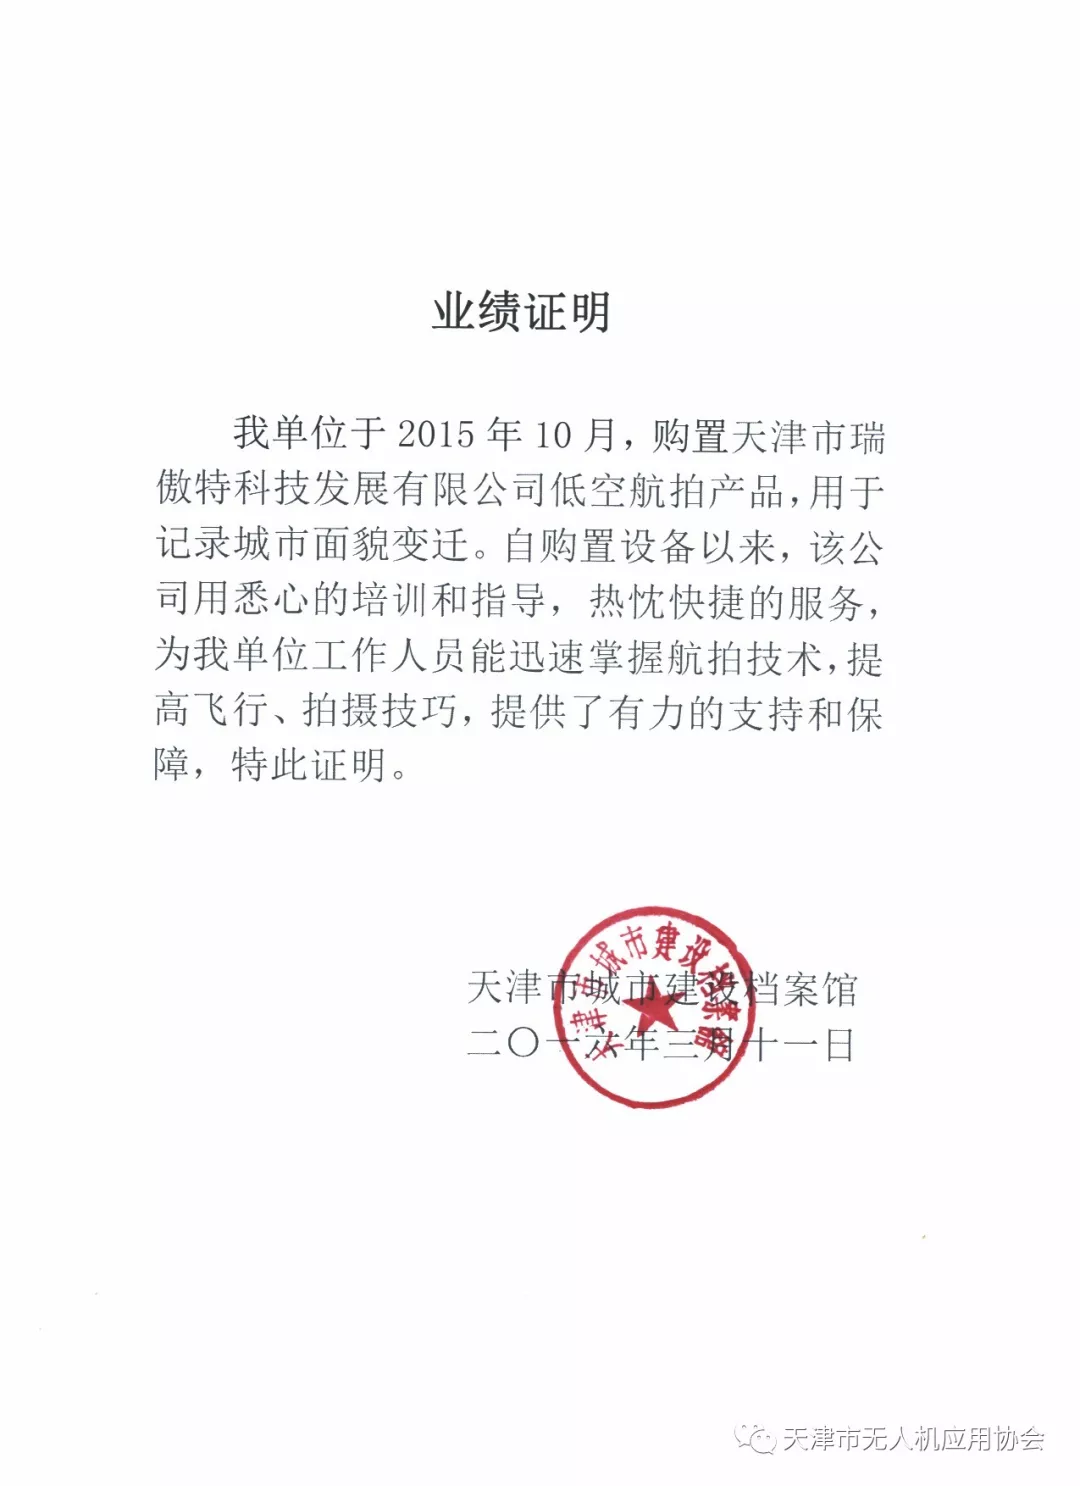 天无协骨干会员单位 天津市瑞傲特科技发展有限公司(图12)